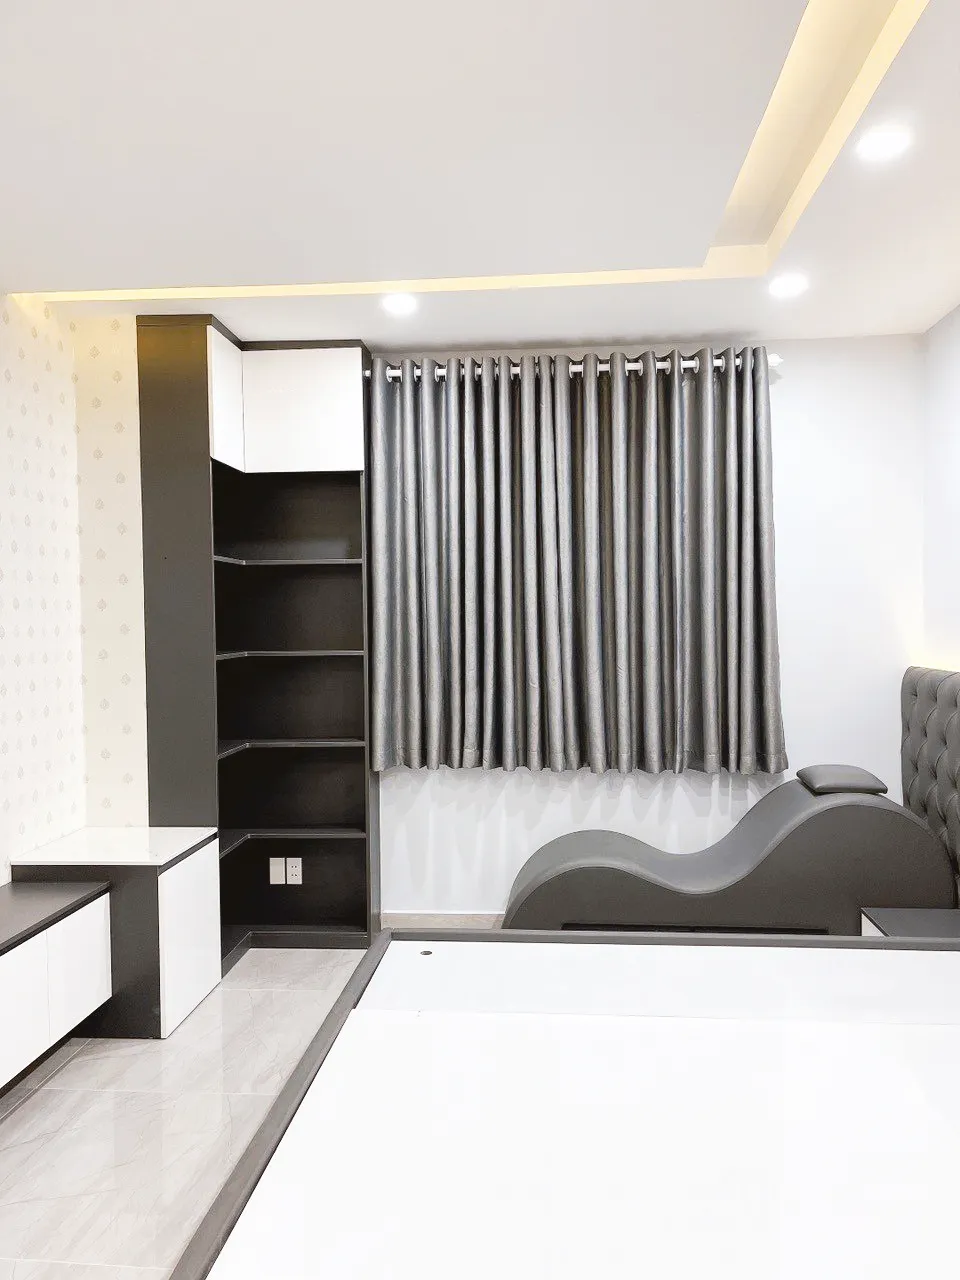 Hoàn thiện nội thất phòng ngủ Căn hộ chung cư H2 Hoàng Diệu phong cách Tối giản Minimalist